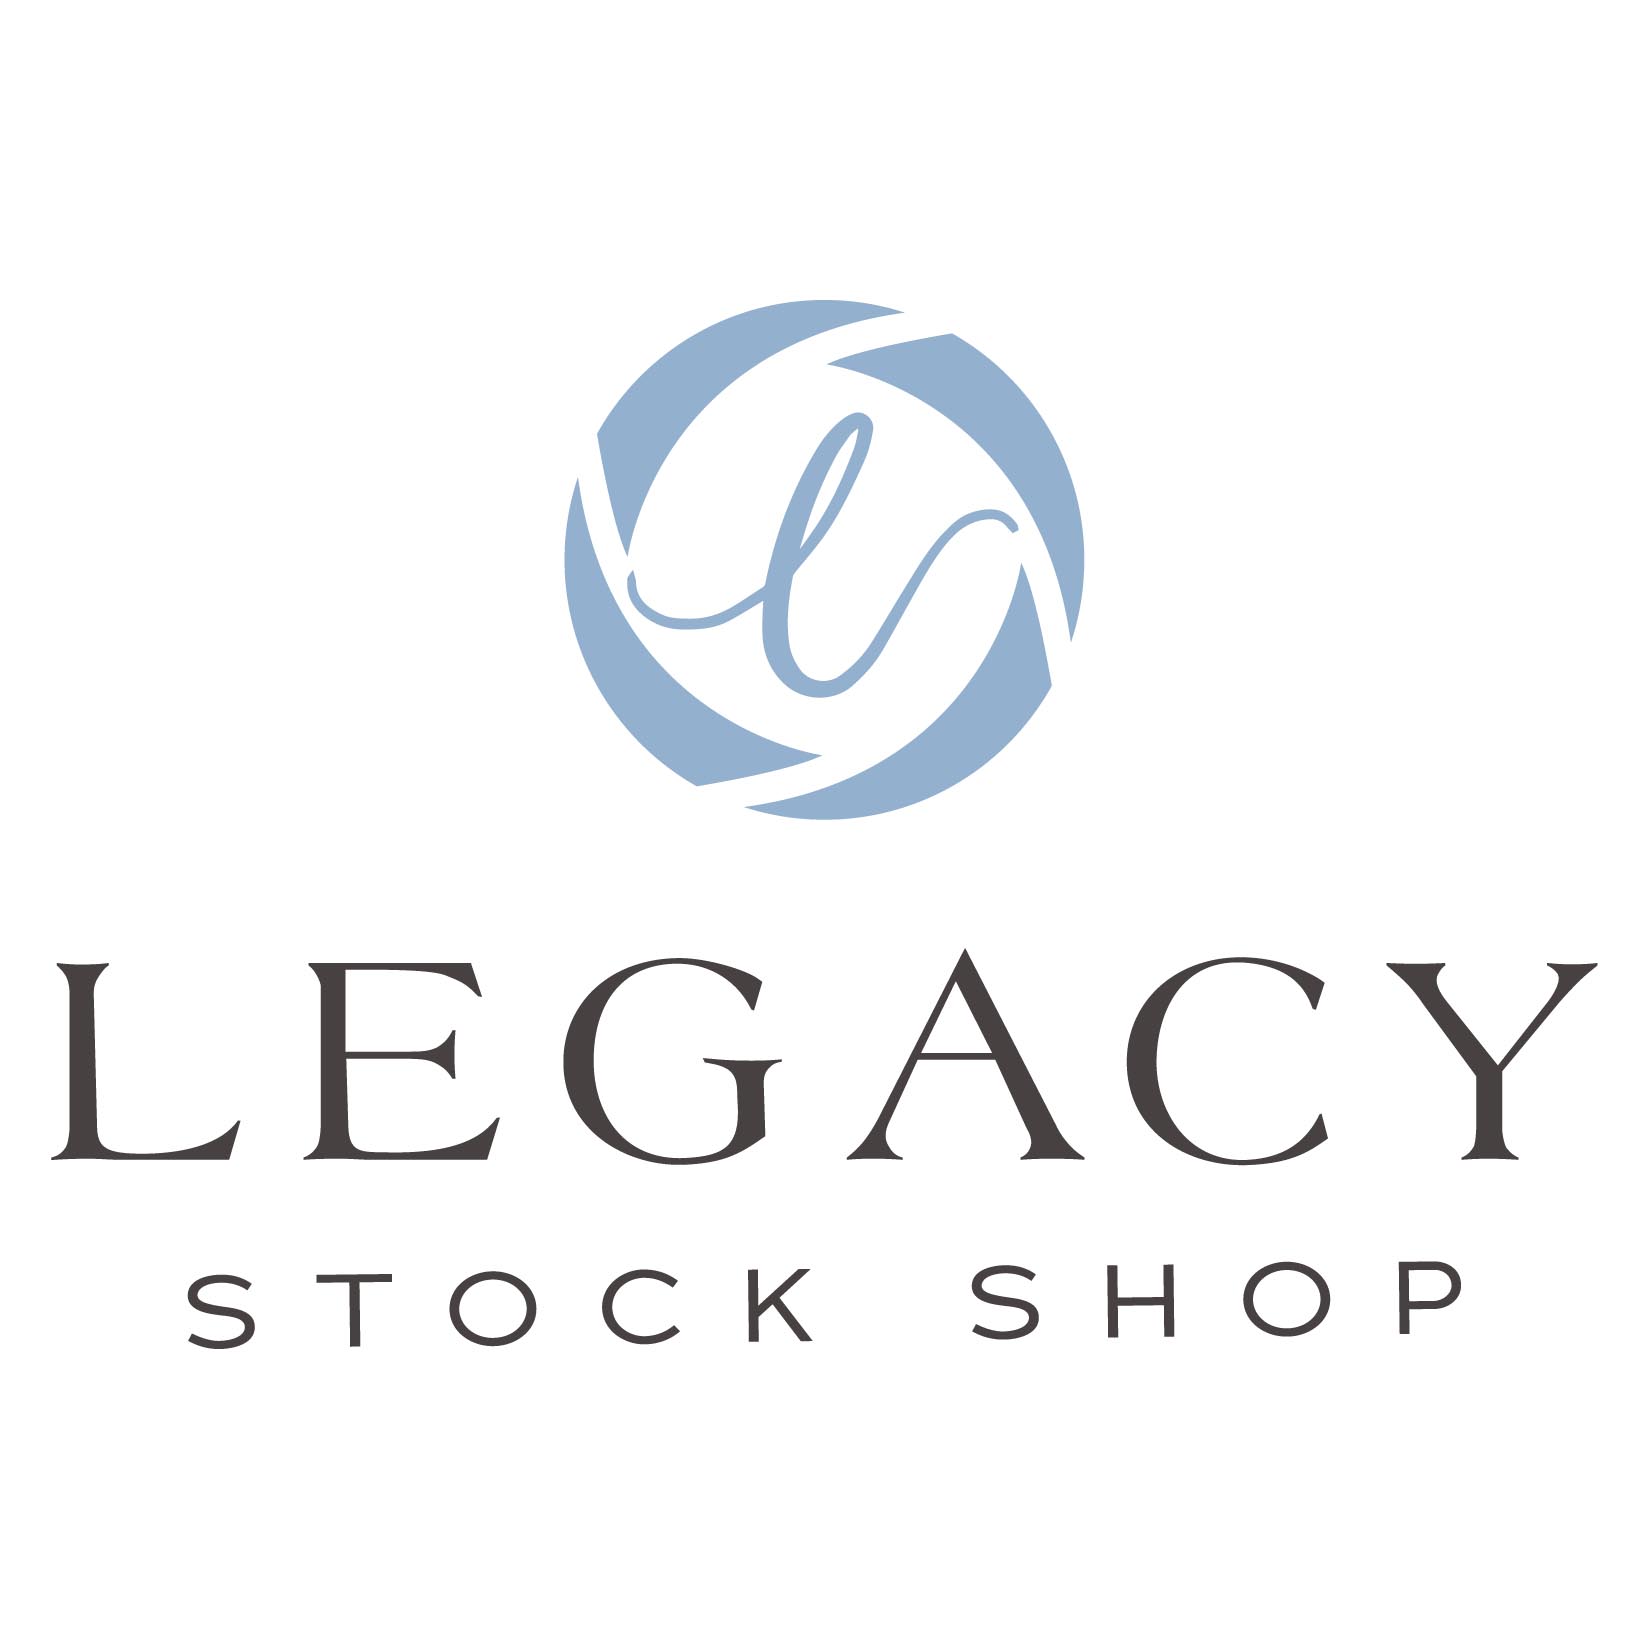 Legacy Stock Shop logo